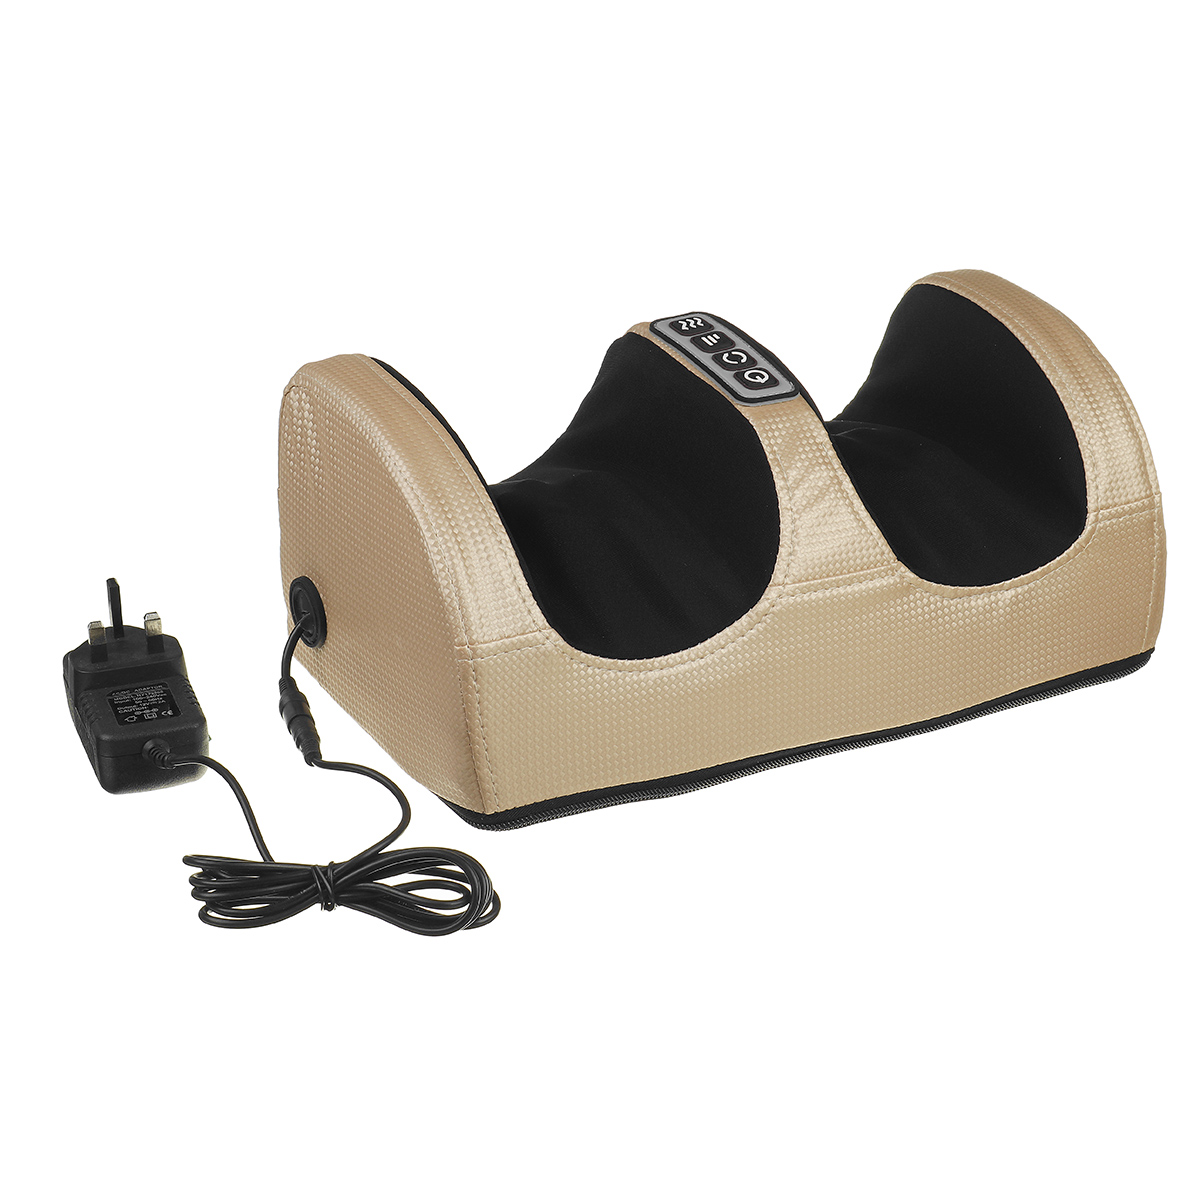 Electric-Foot-Massager-Calf-Leg-Massage-Heated-Shiatsu-Kneading-Rolling-Machine-1786905-7